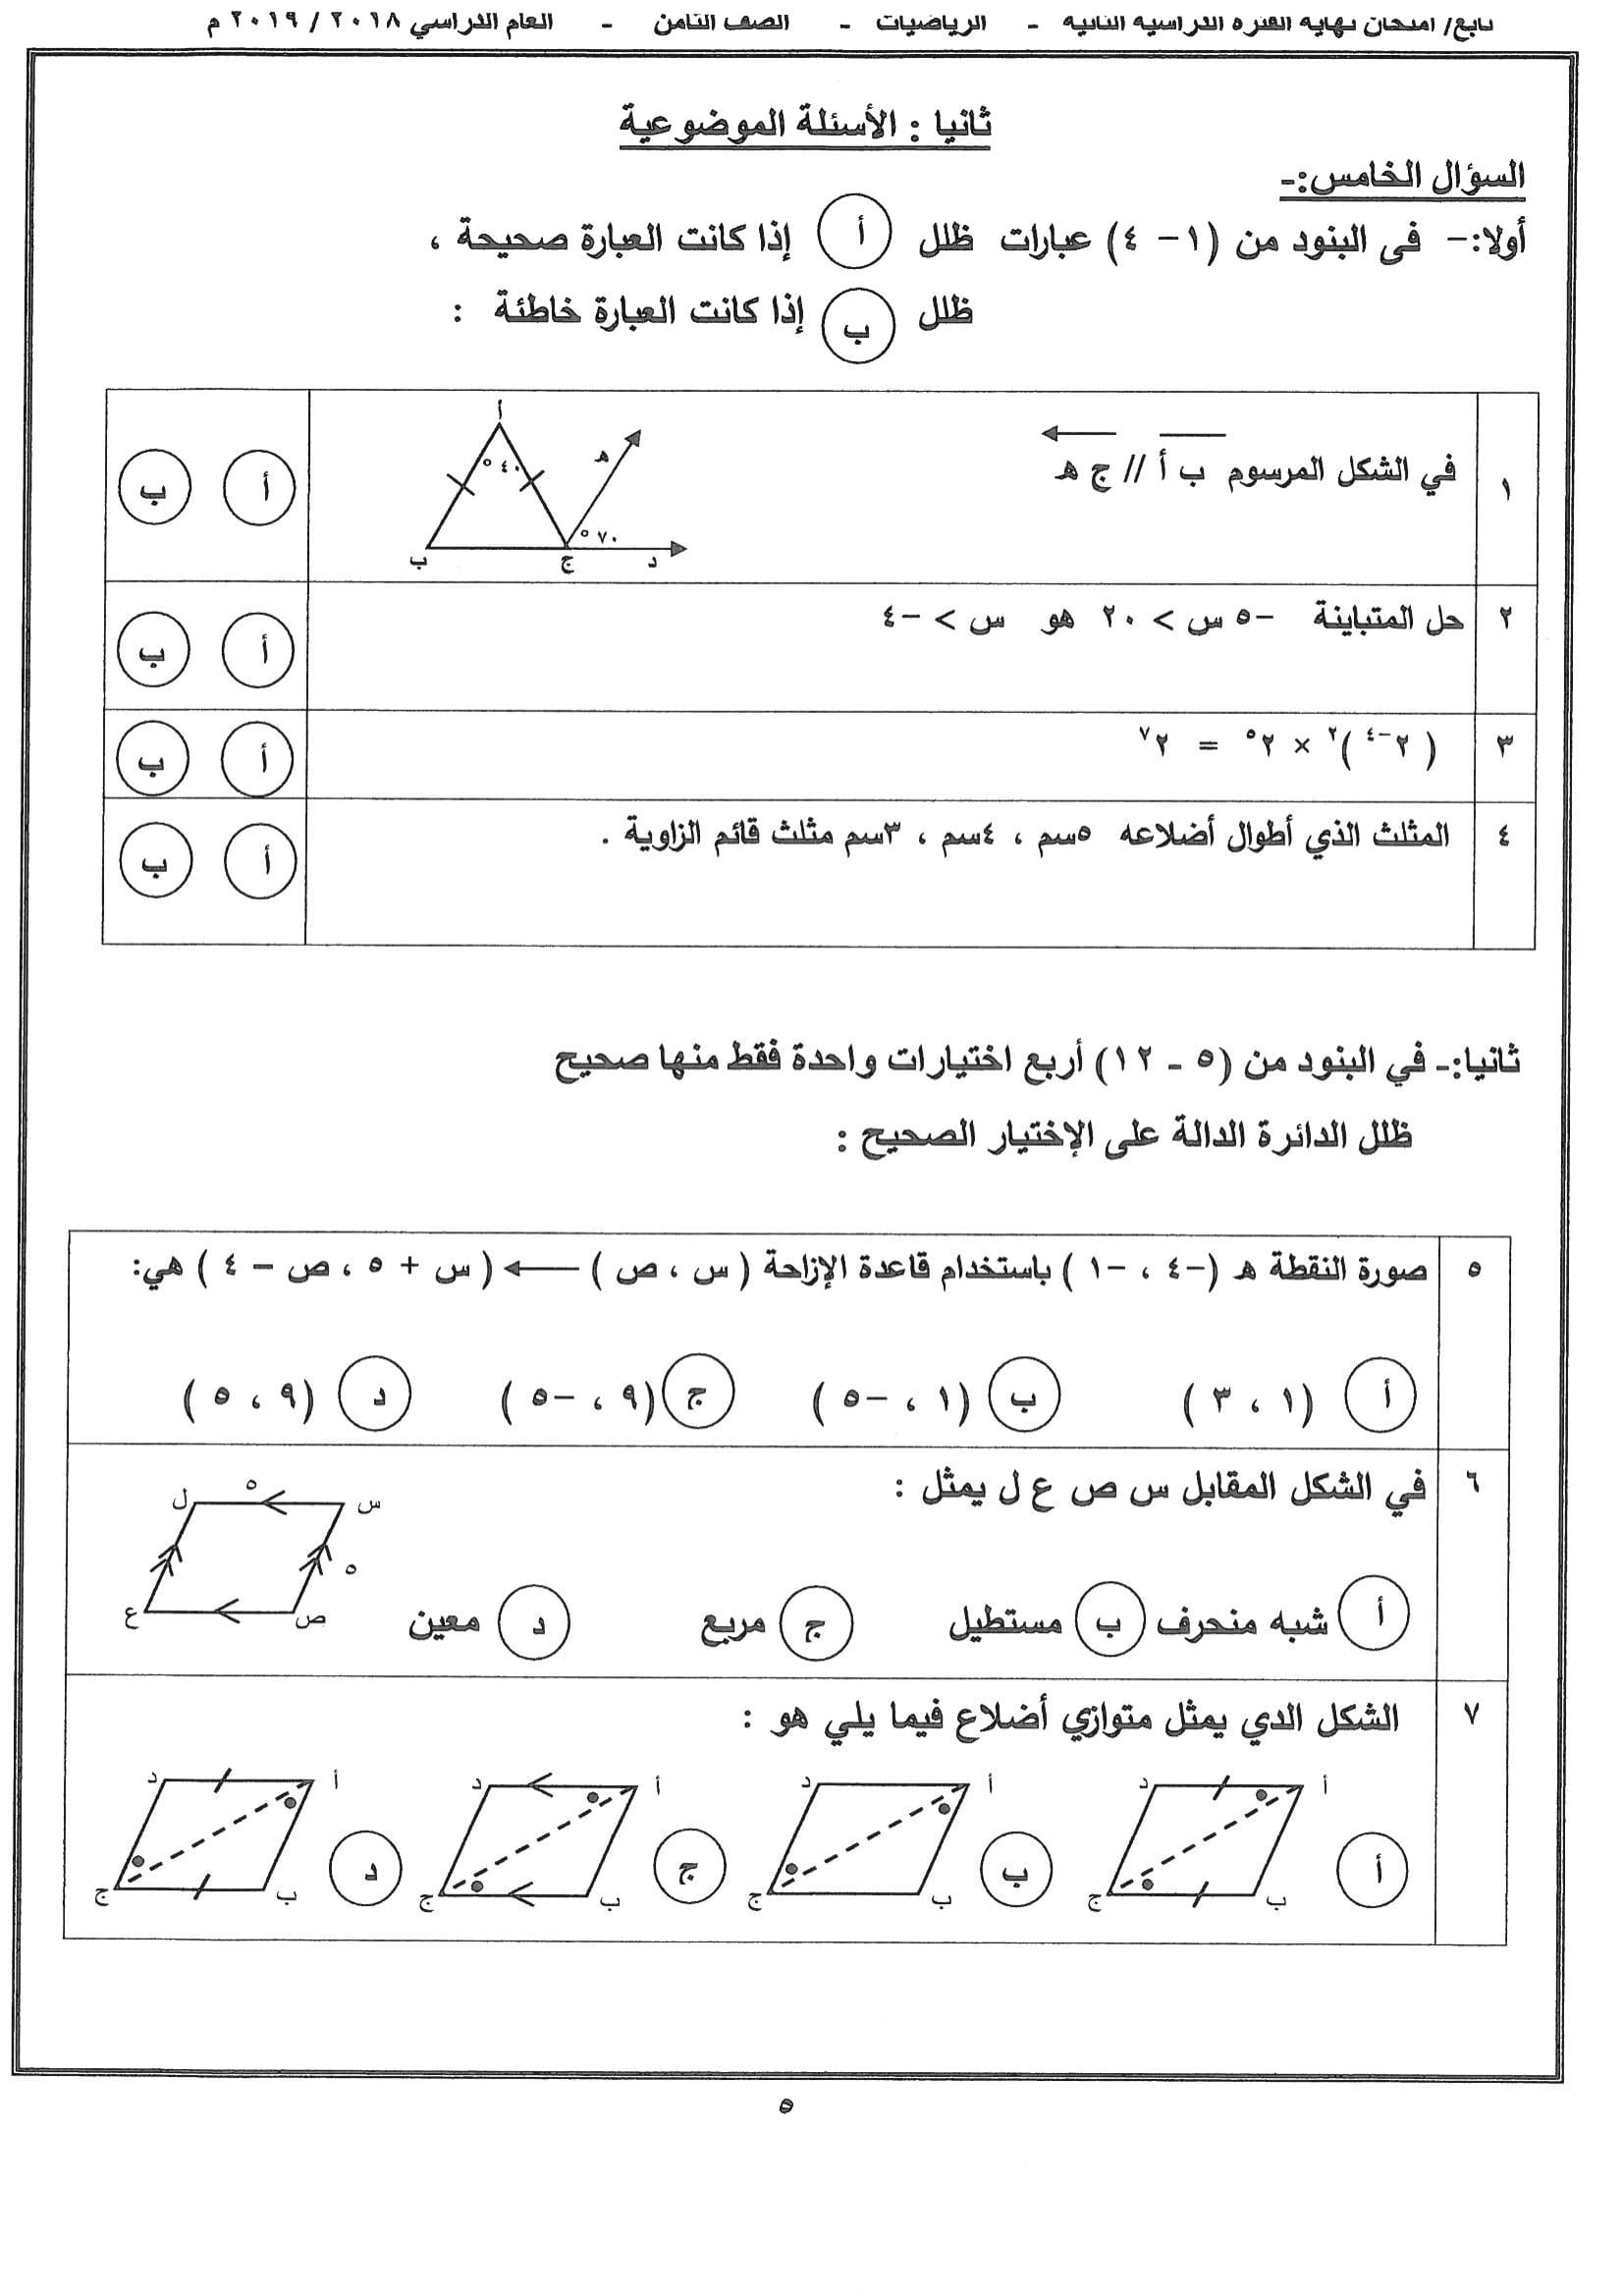 نموذج اجابة اختبار مادةالرياضيات الثامن الفصل الثاني